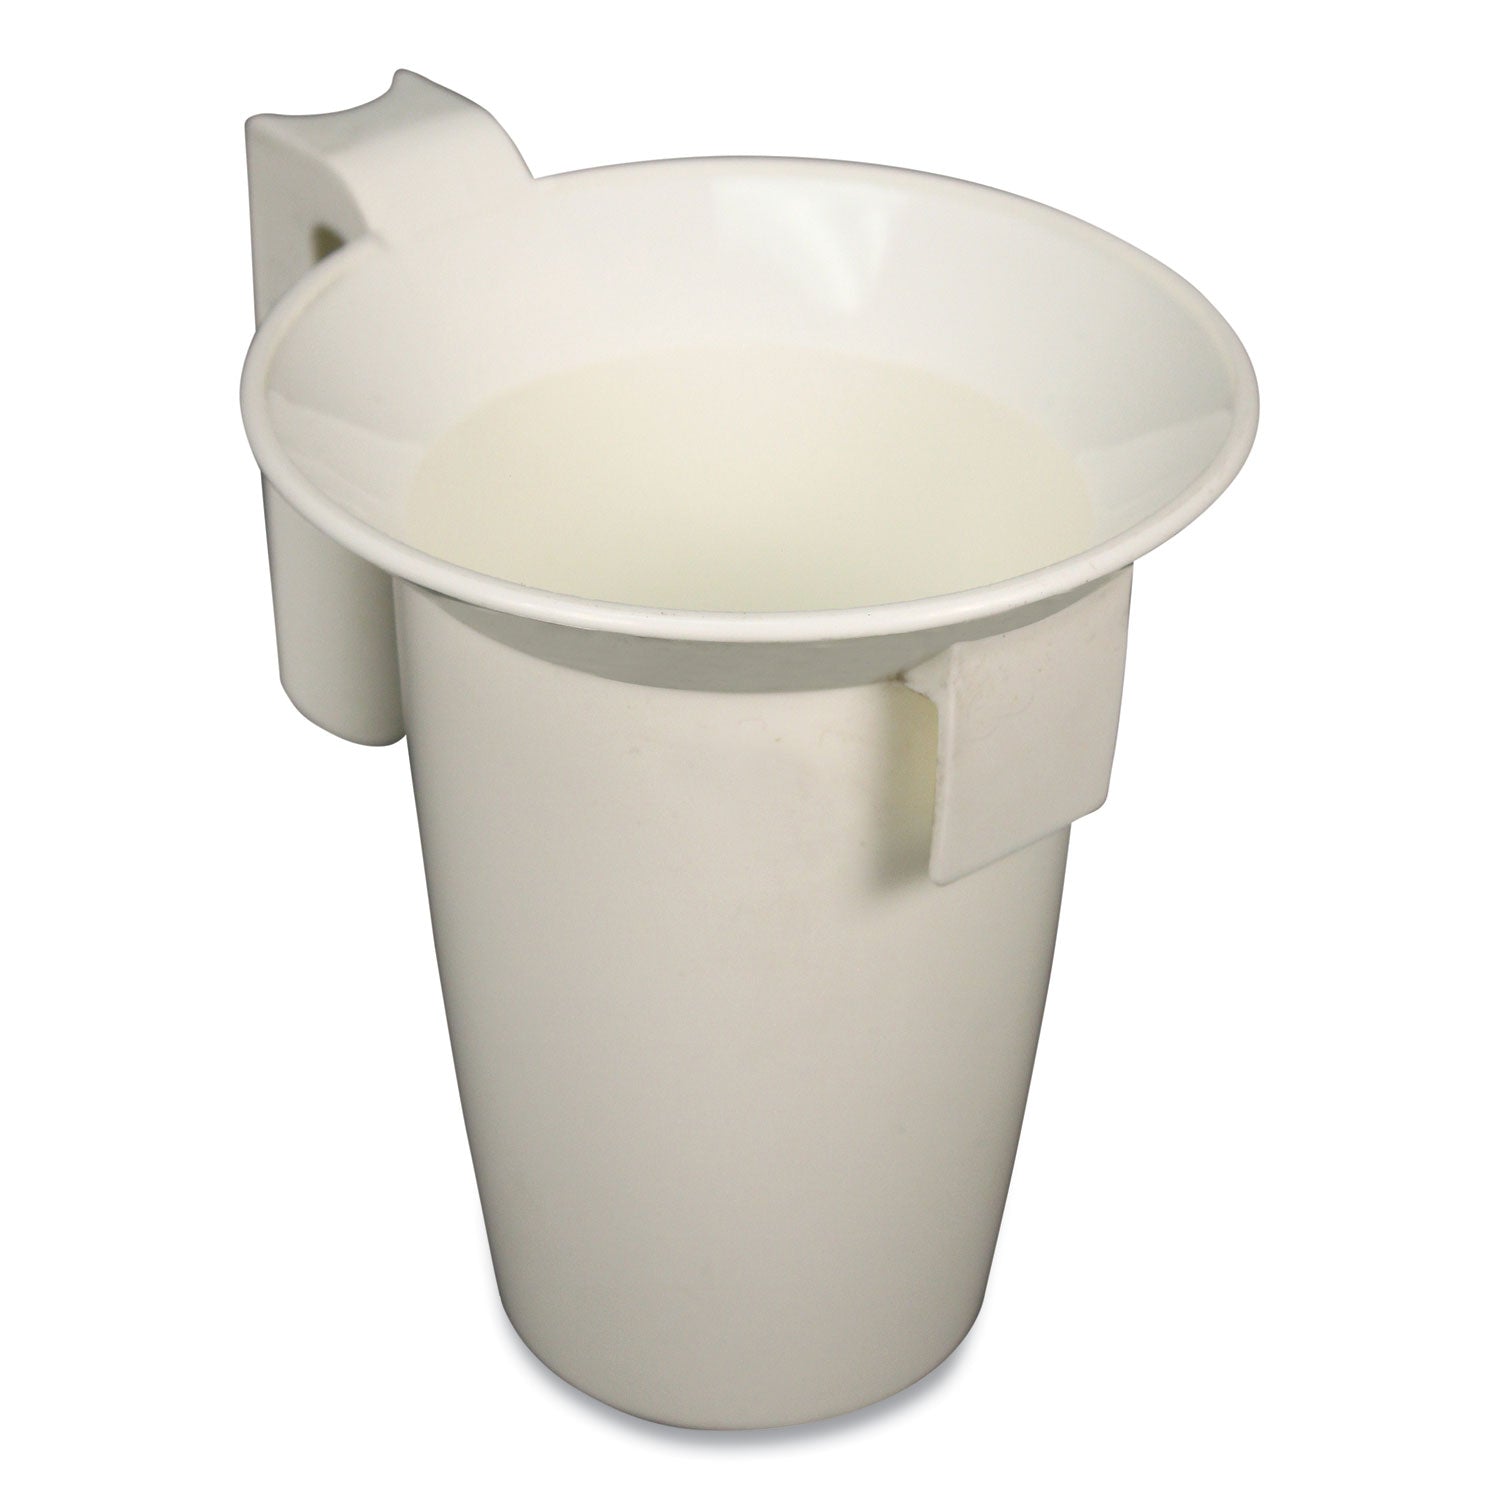 value-plus-toilet-bowl-caddy-white_imp150ea - 2